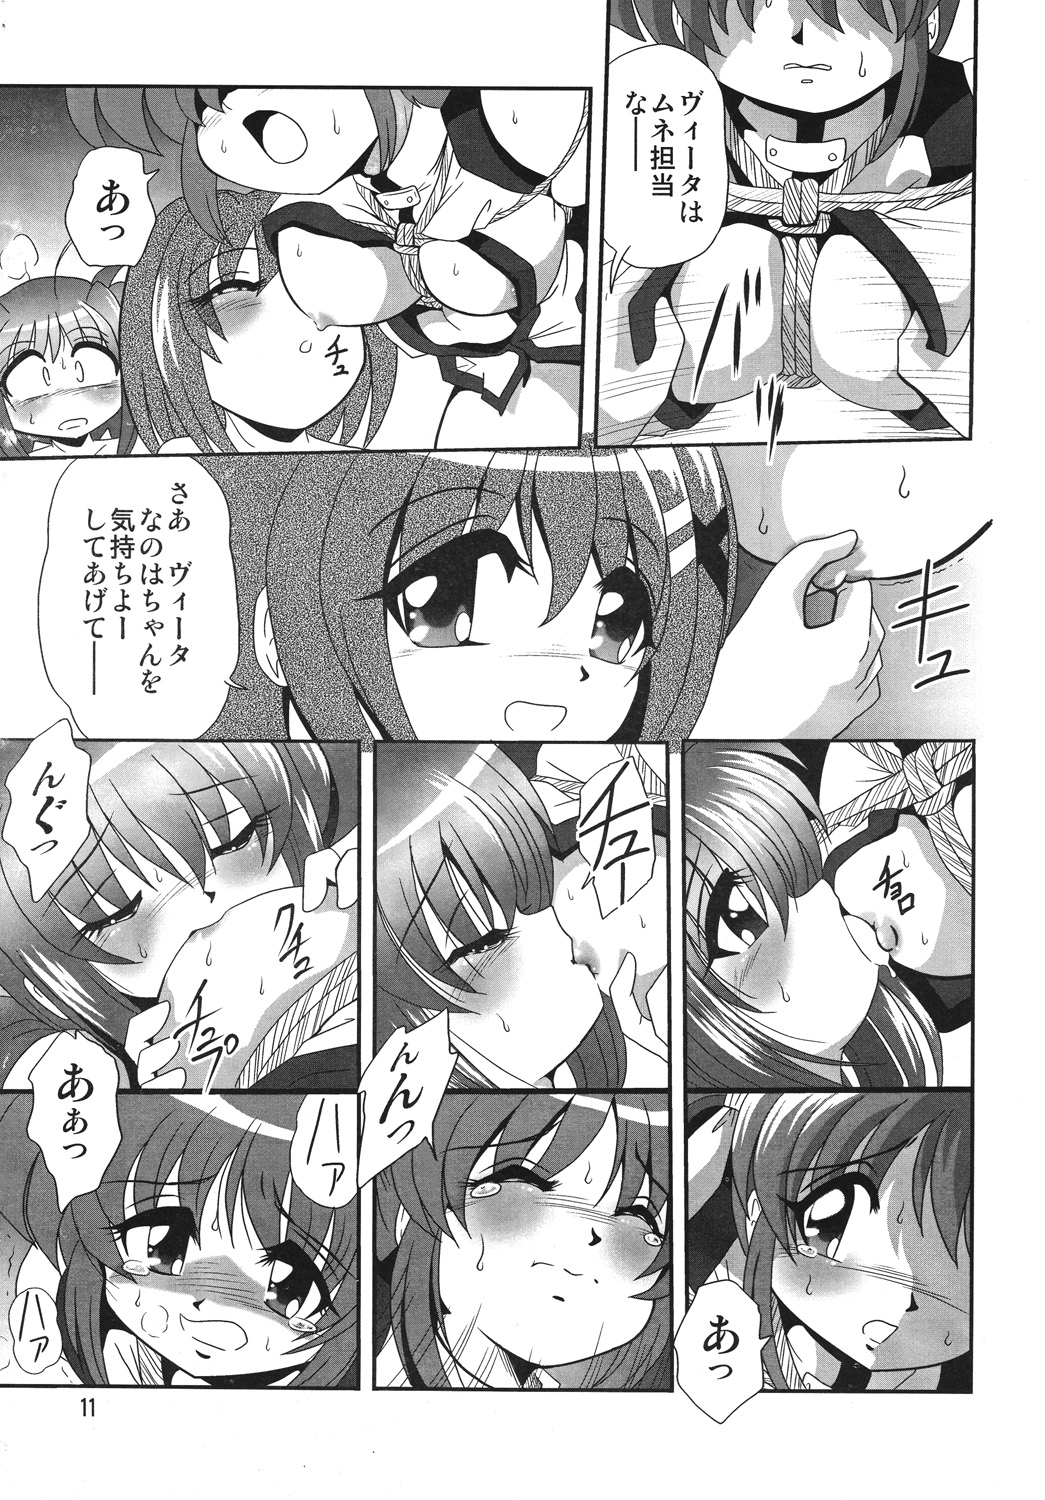 [Thirty Saver Street 2D Shooting] Storage Ignition 4 (Mahou Shoujo Lyrical Nanoha / Magical Girl Lyrical Nanoha) page 10 full